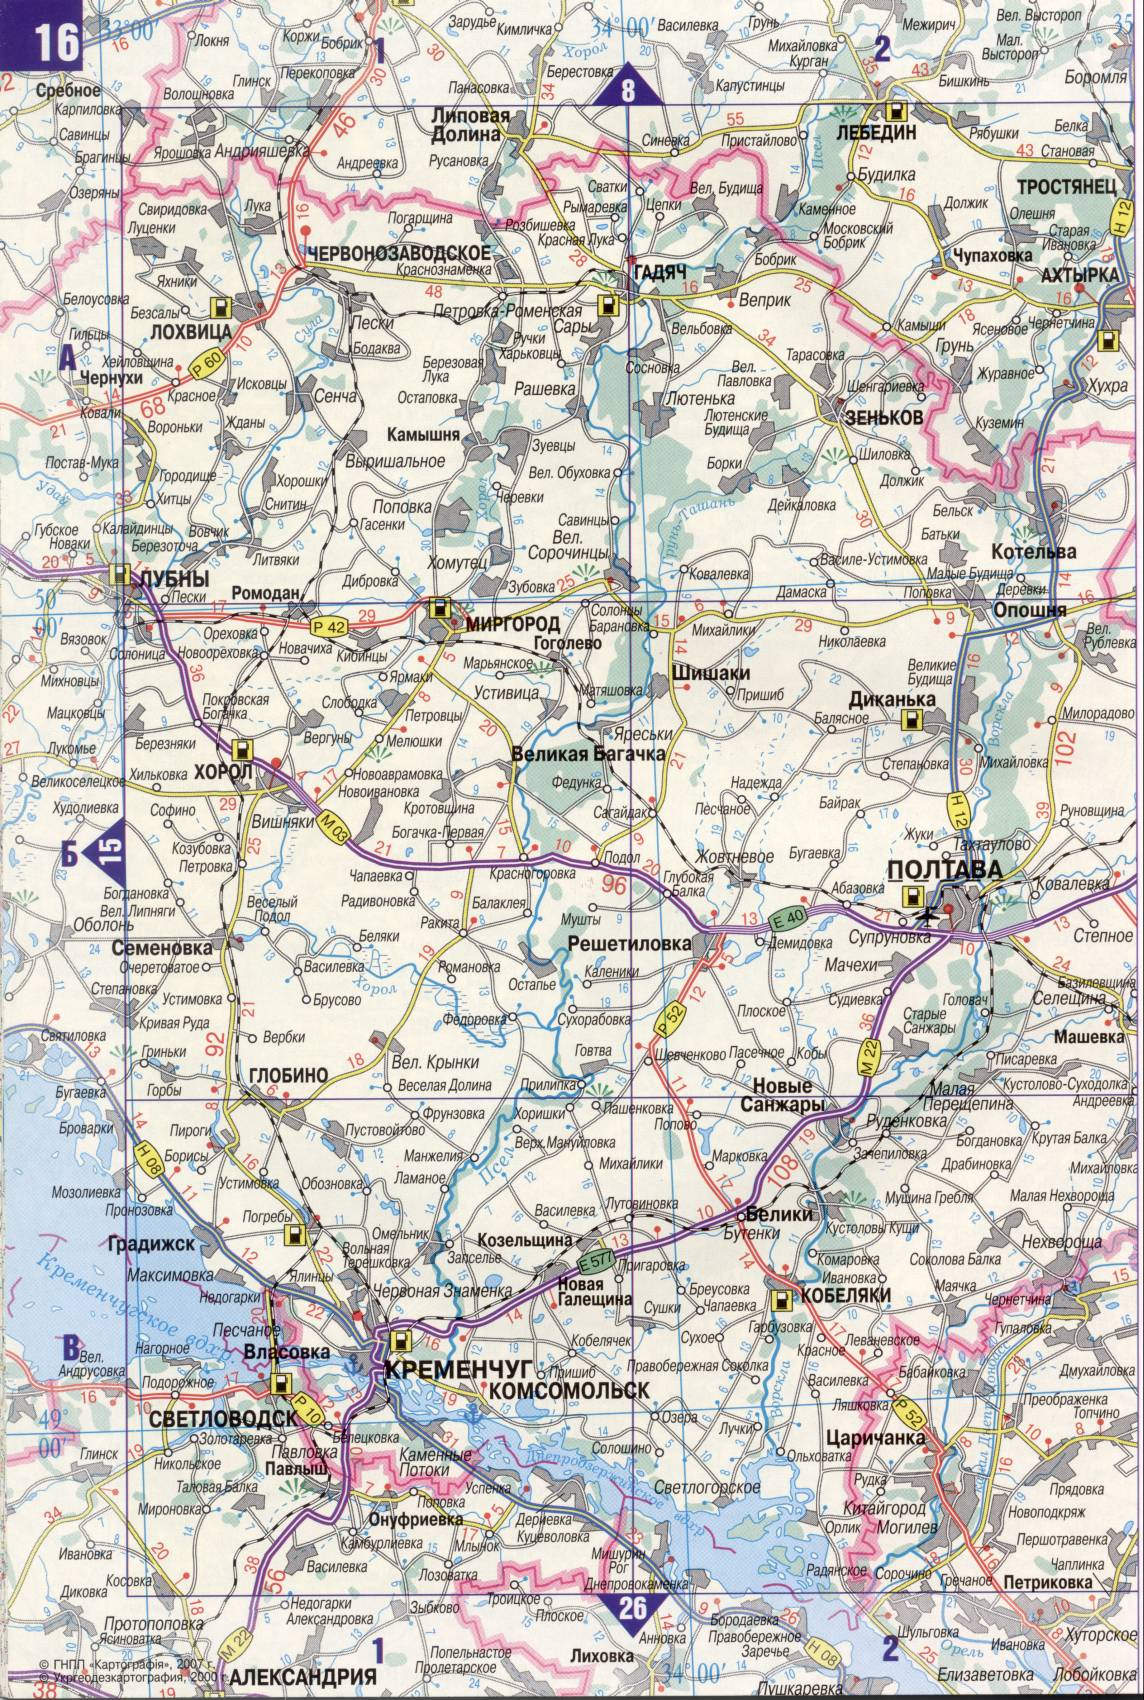 Karte der Ukraine. Detaillierte Straßenkarte der Ukraine avtomobilnog Satin. kostenlos herunterladen, G1